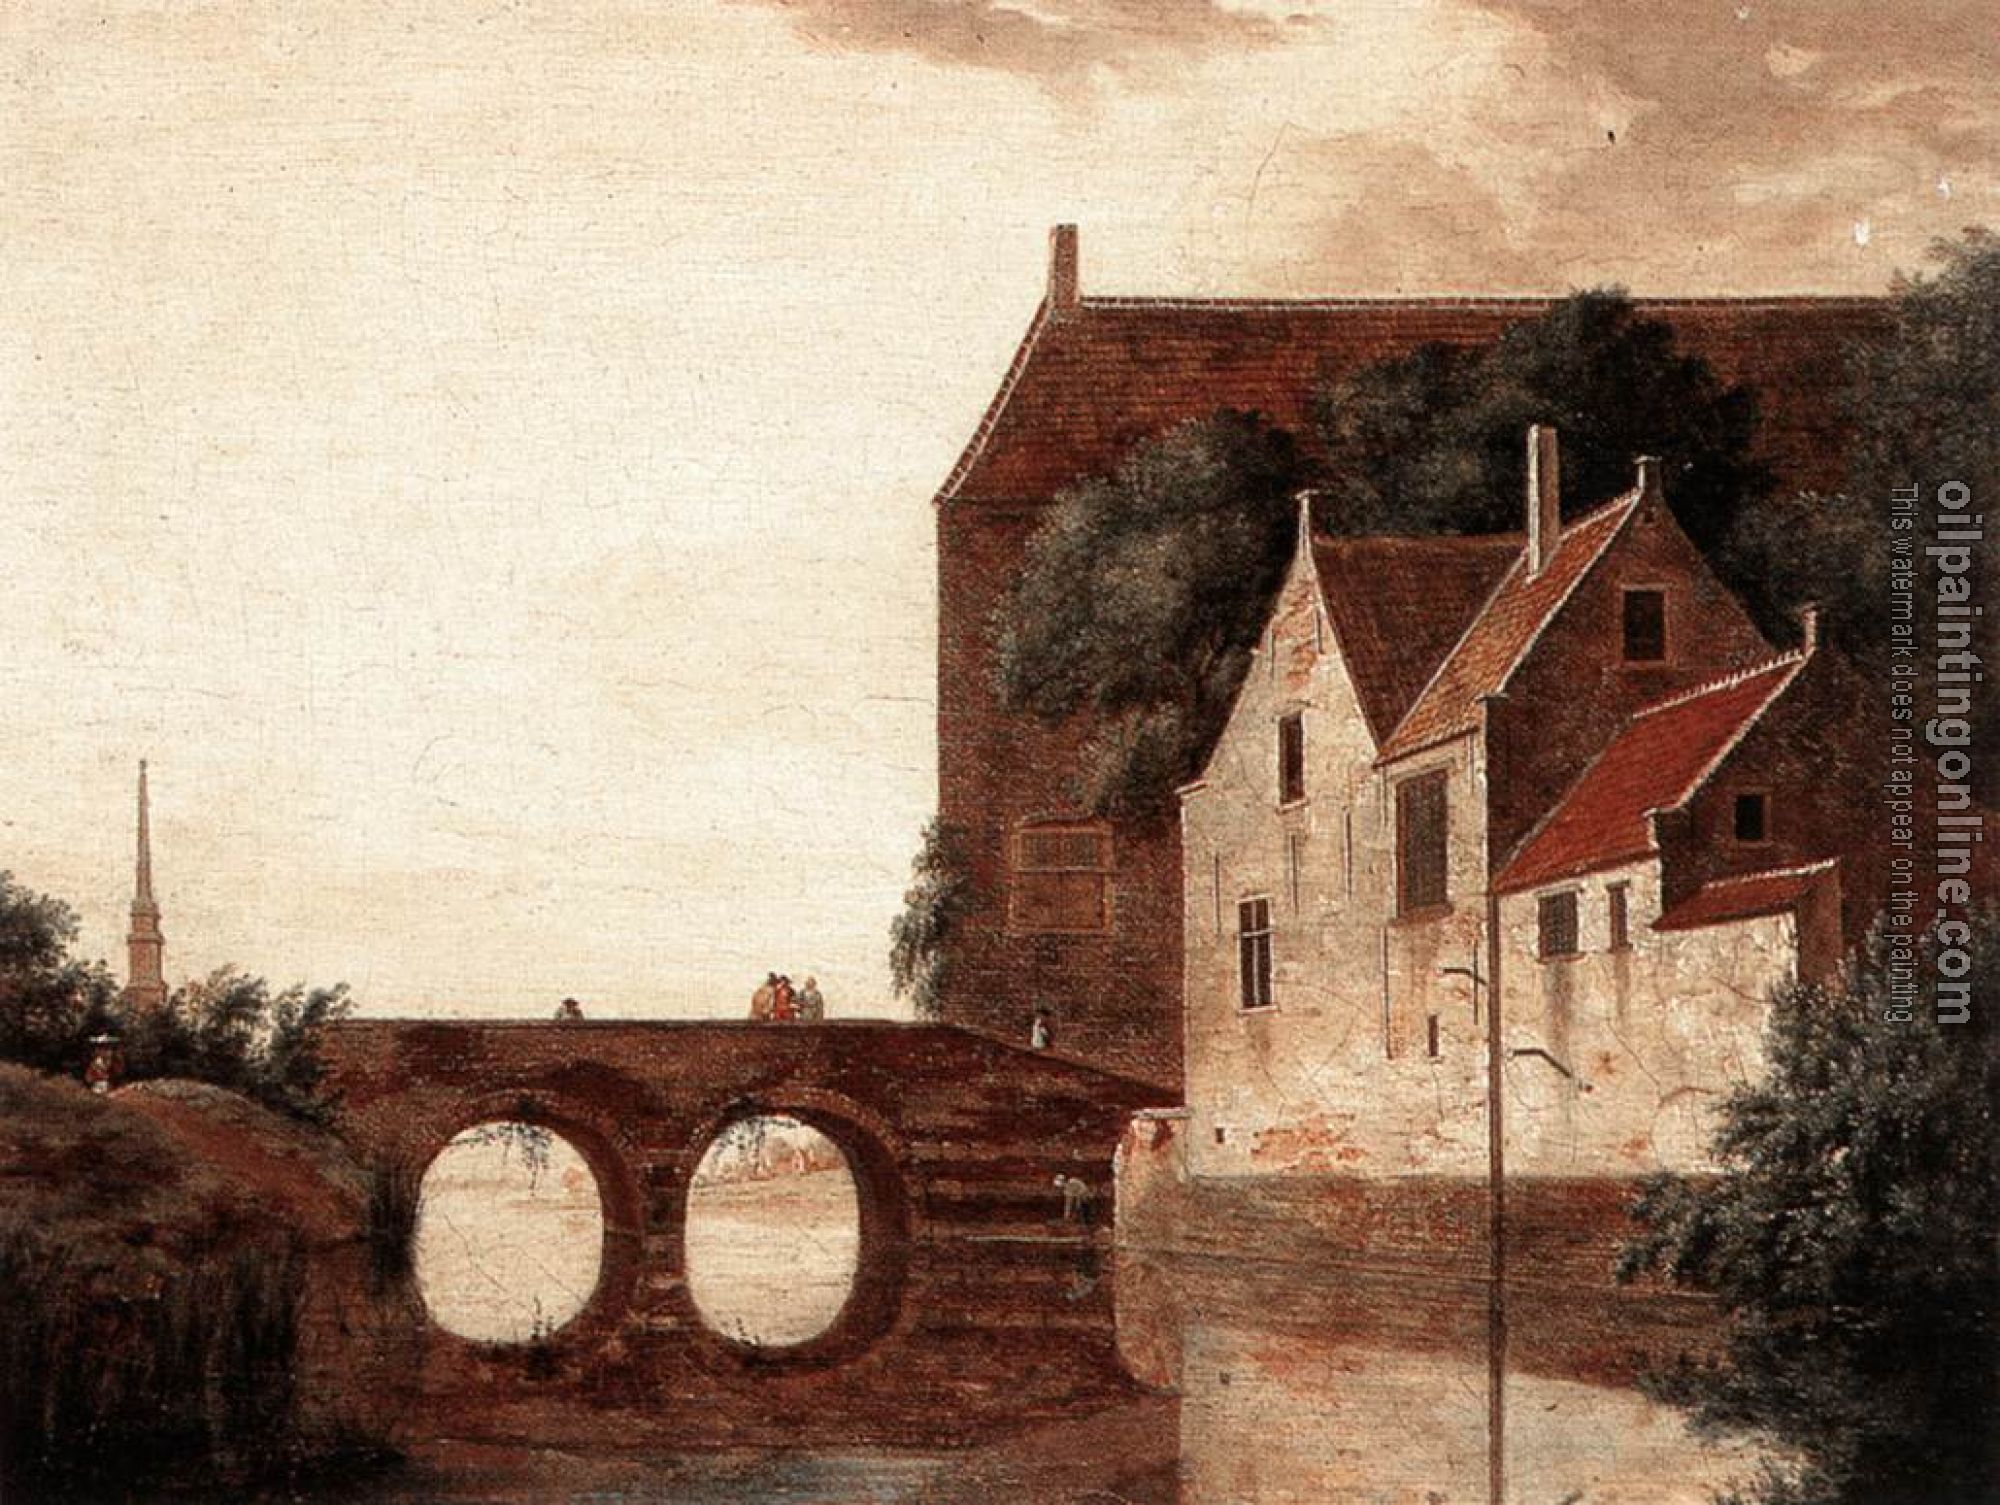 Heyden, Jan van der - View of a Bridge